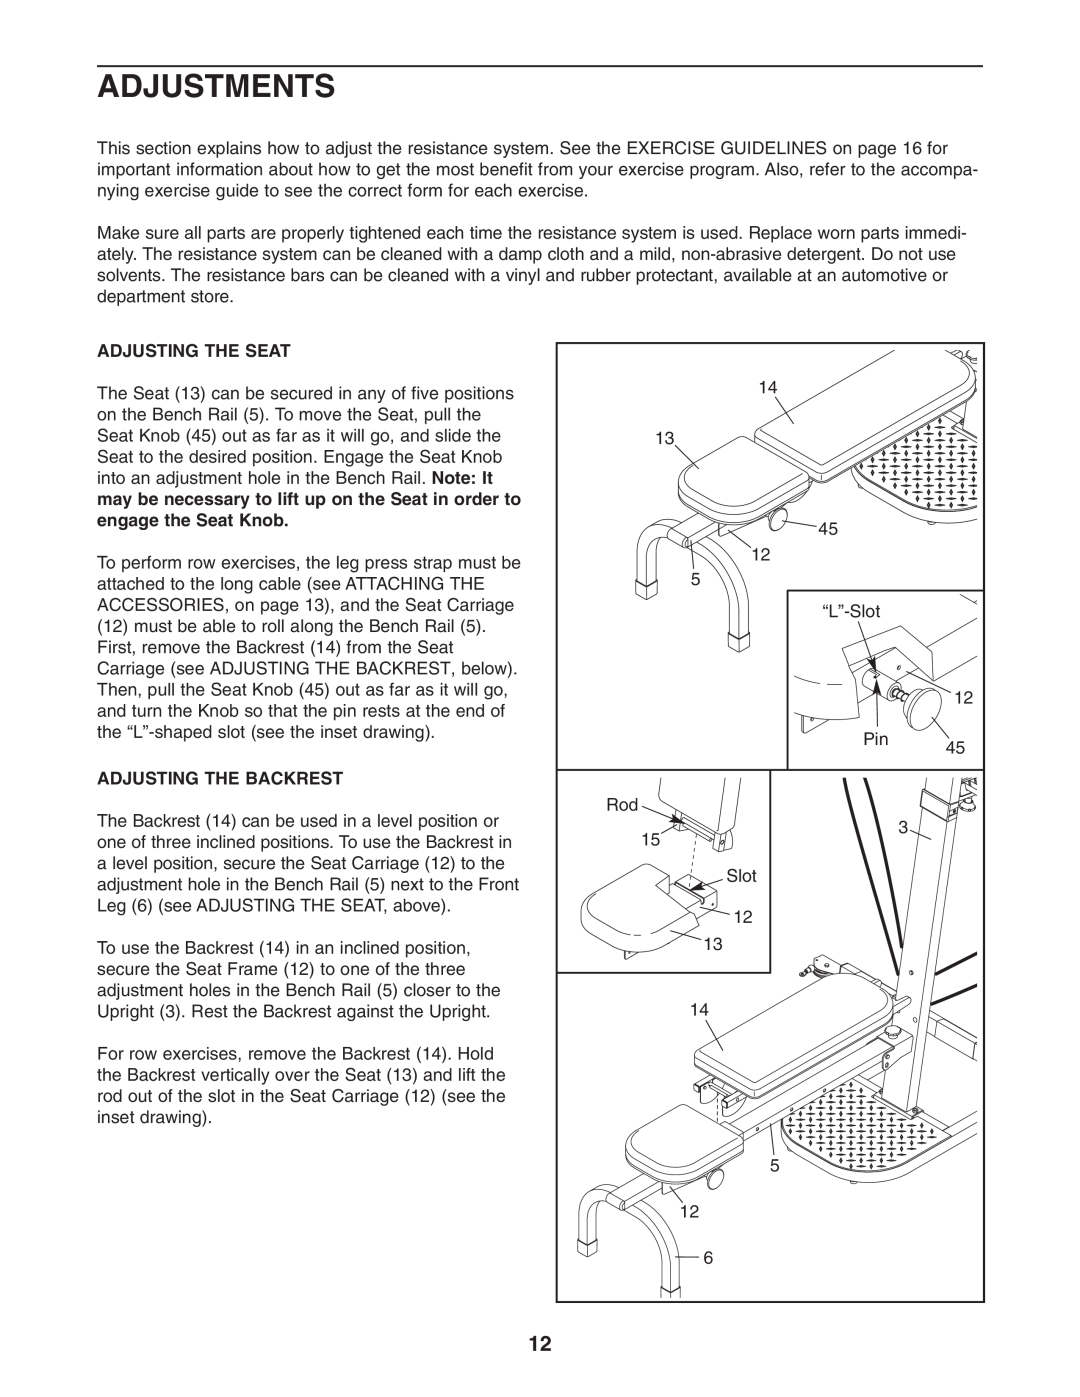 Weider WESY3873.2 user manual Adjustments, Adjusting The Seat, Adjusting The Backrest 